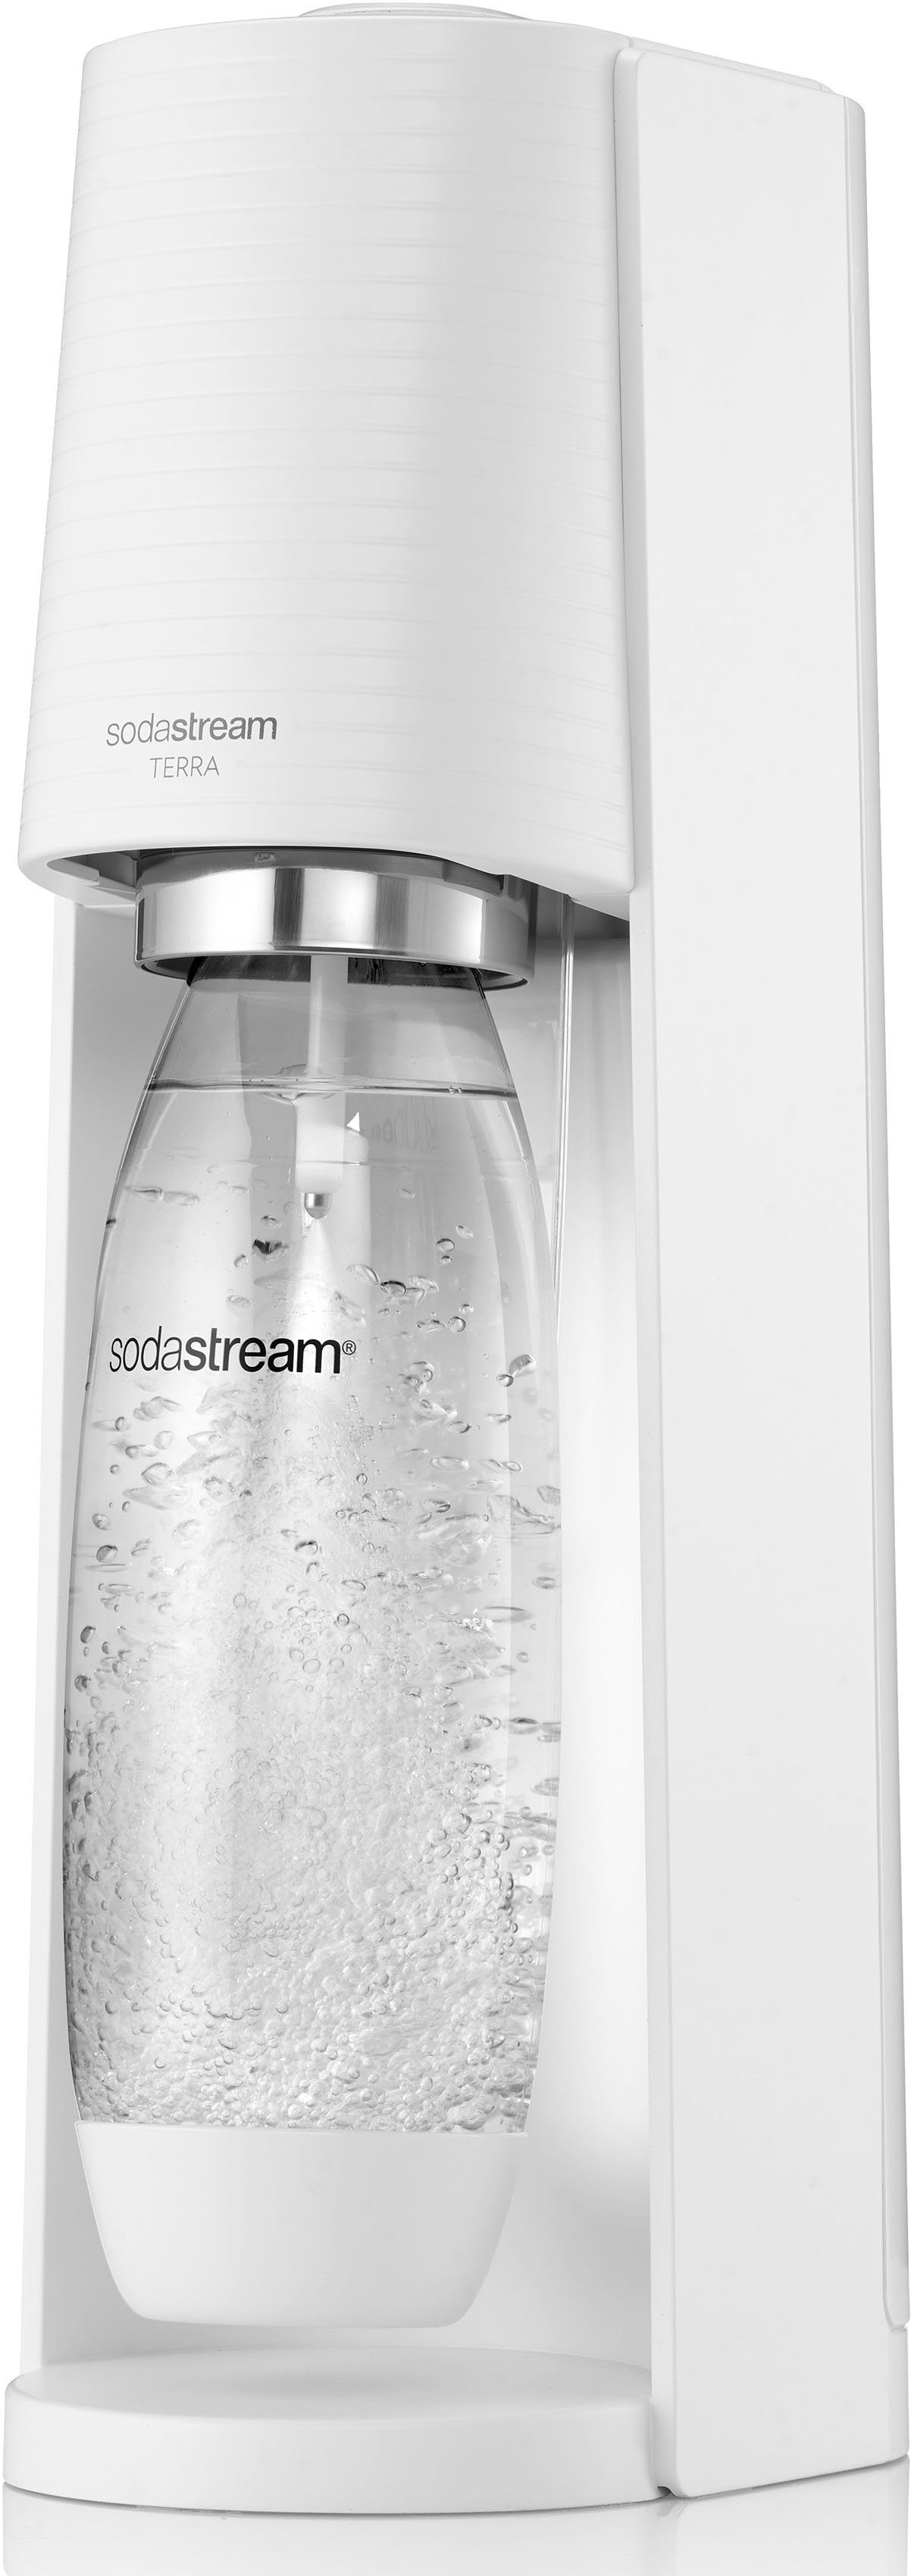 SodaStream Wassersprudler TERRA, inkl. 1x 1L CO2-Zylinder weiß CQC, 1x spülmaschinenfeste Kunststoff-Flasche